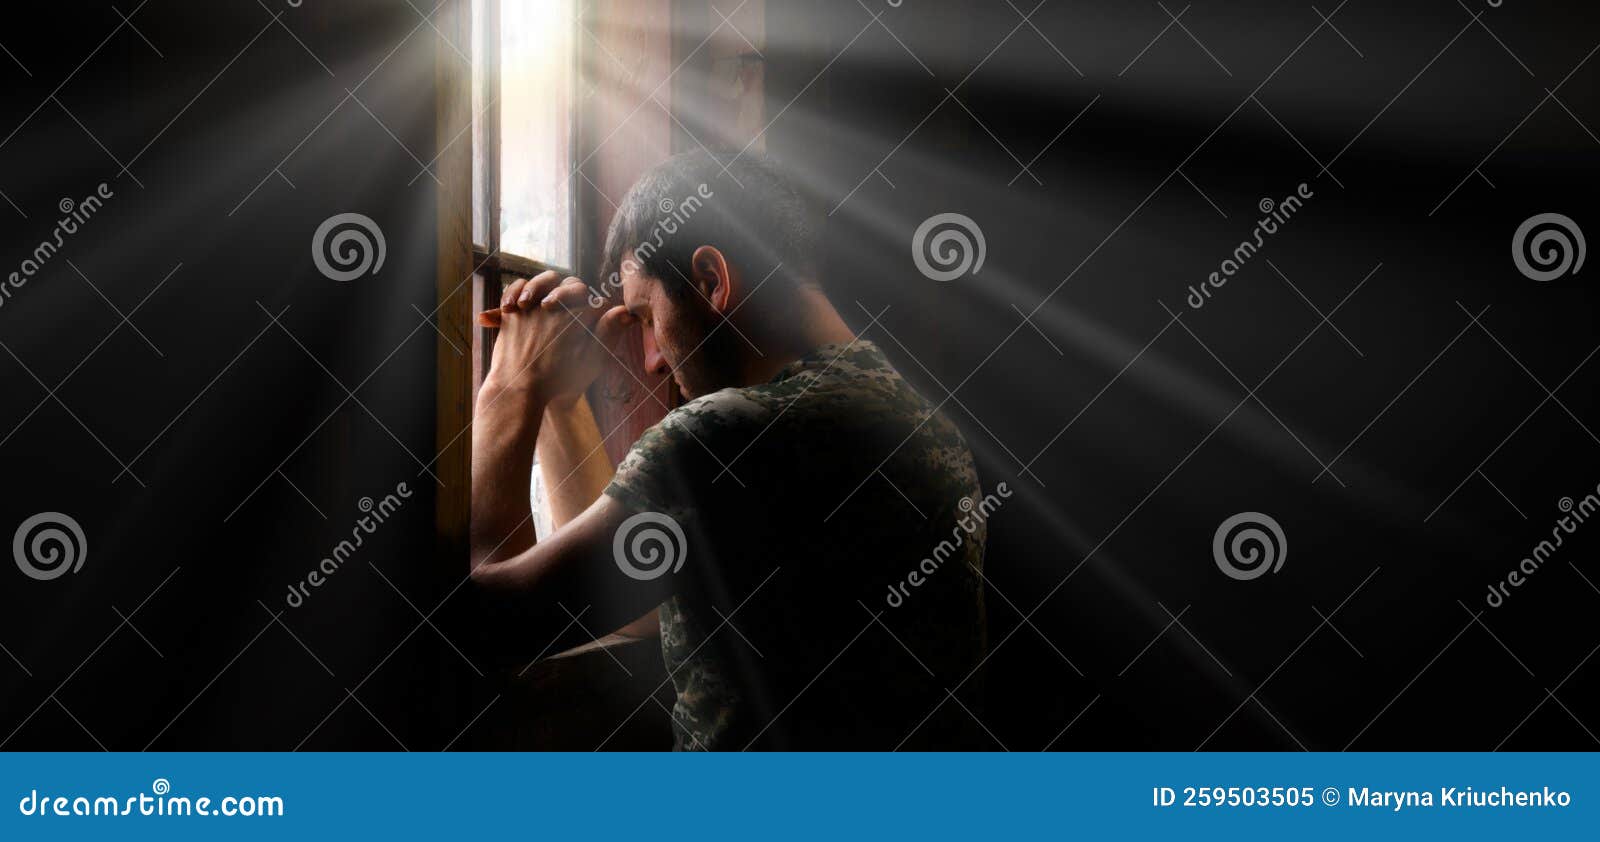 sad soldier praying at the window